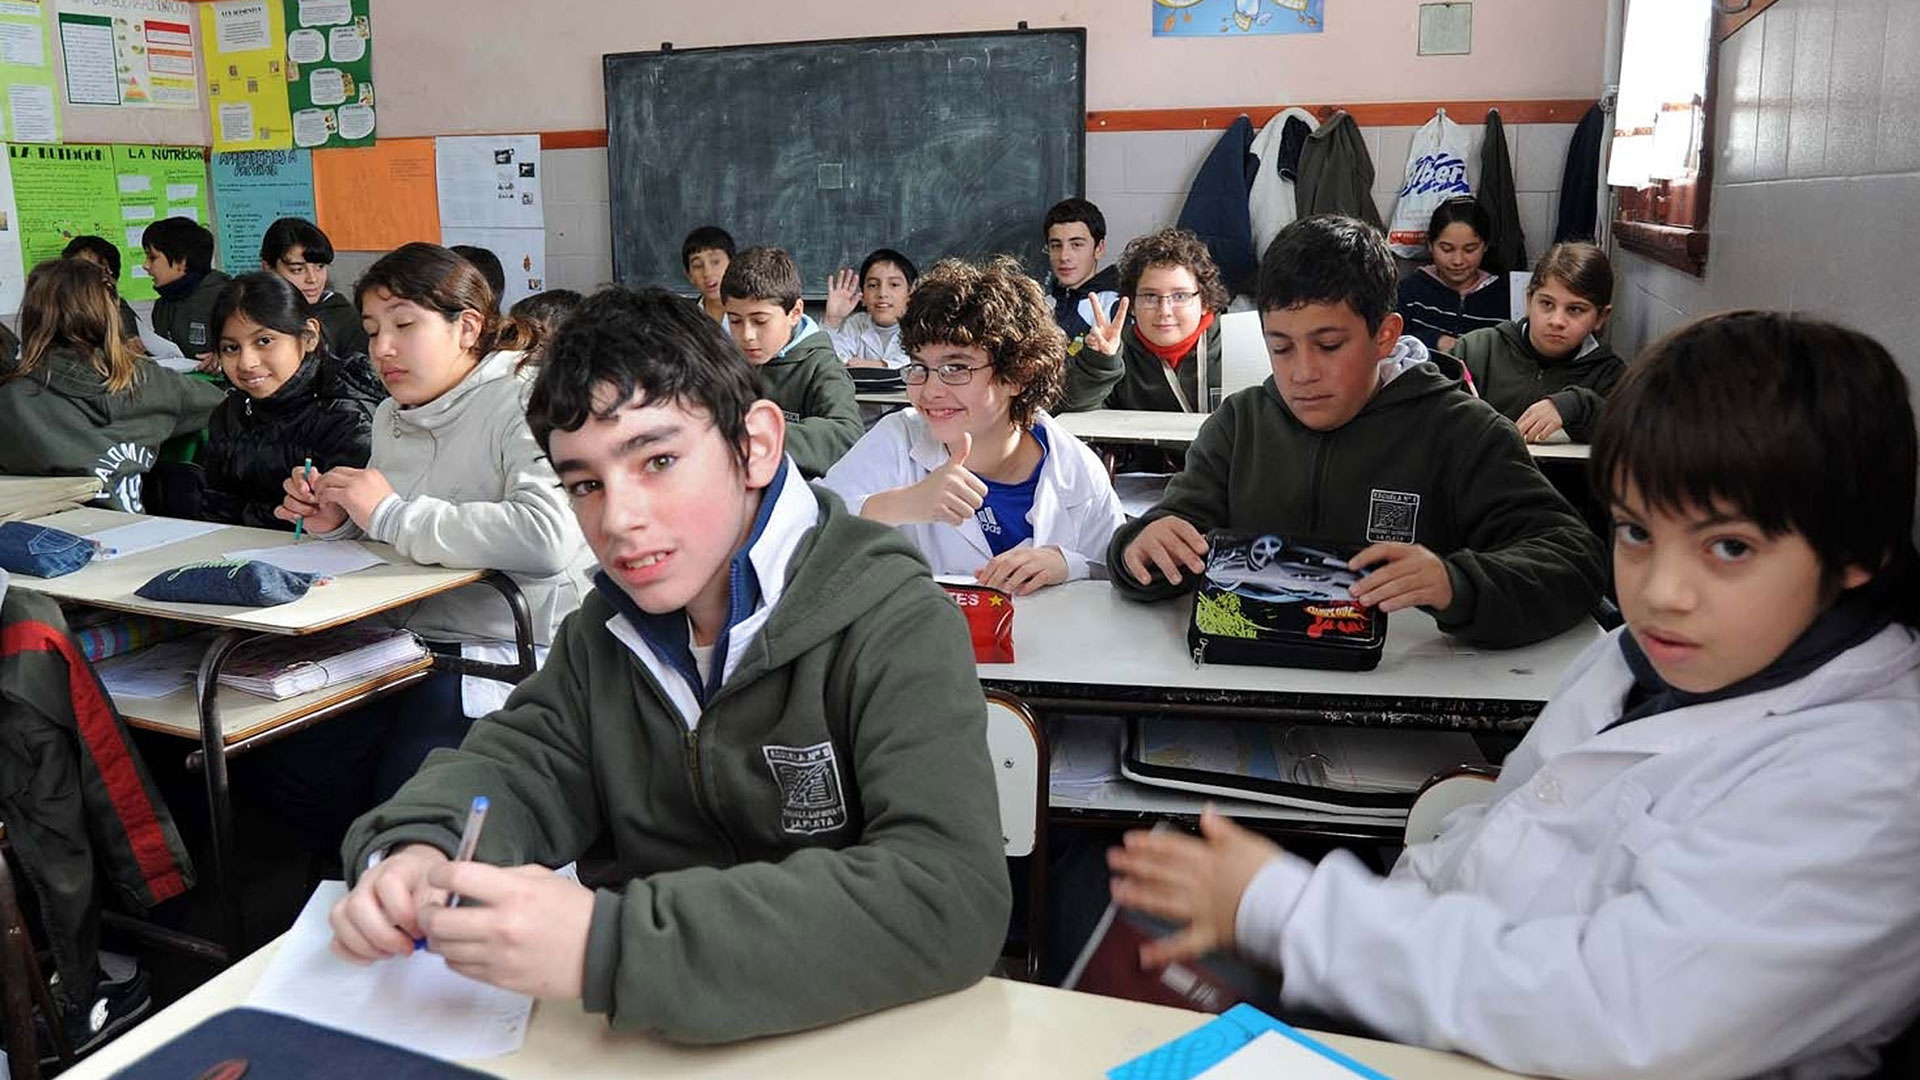 Según Salazar Xirinachs, la educación es clave para aumentar la productividad y el crecimiento de América Latina, pero no se resuelve solo aumentando el presupuesto educativo